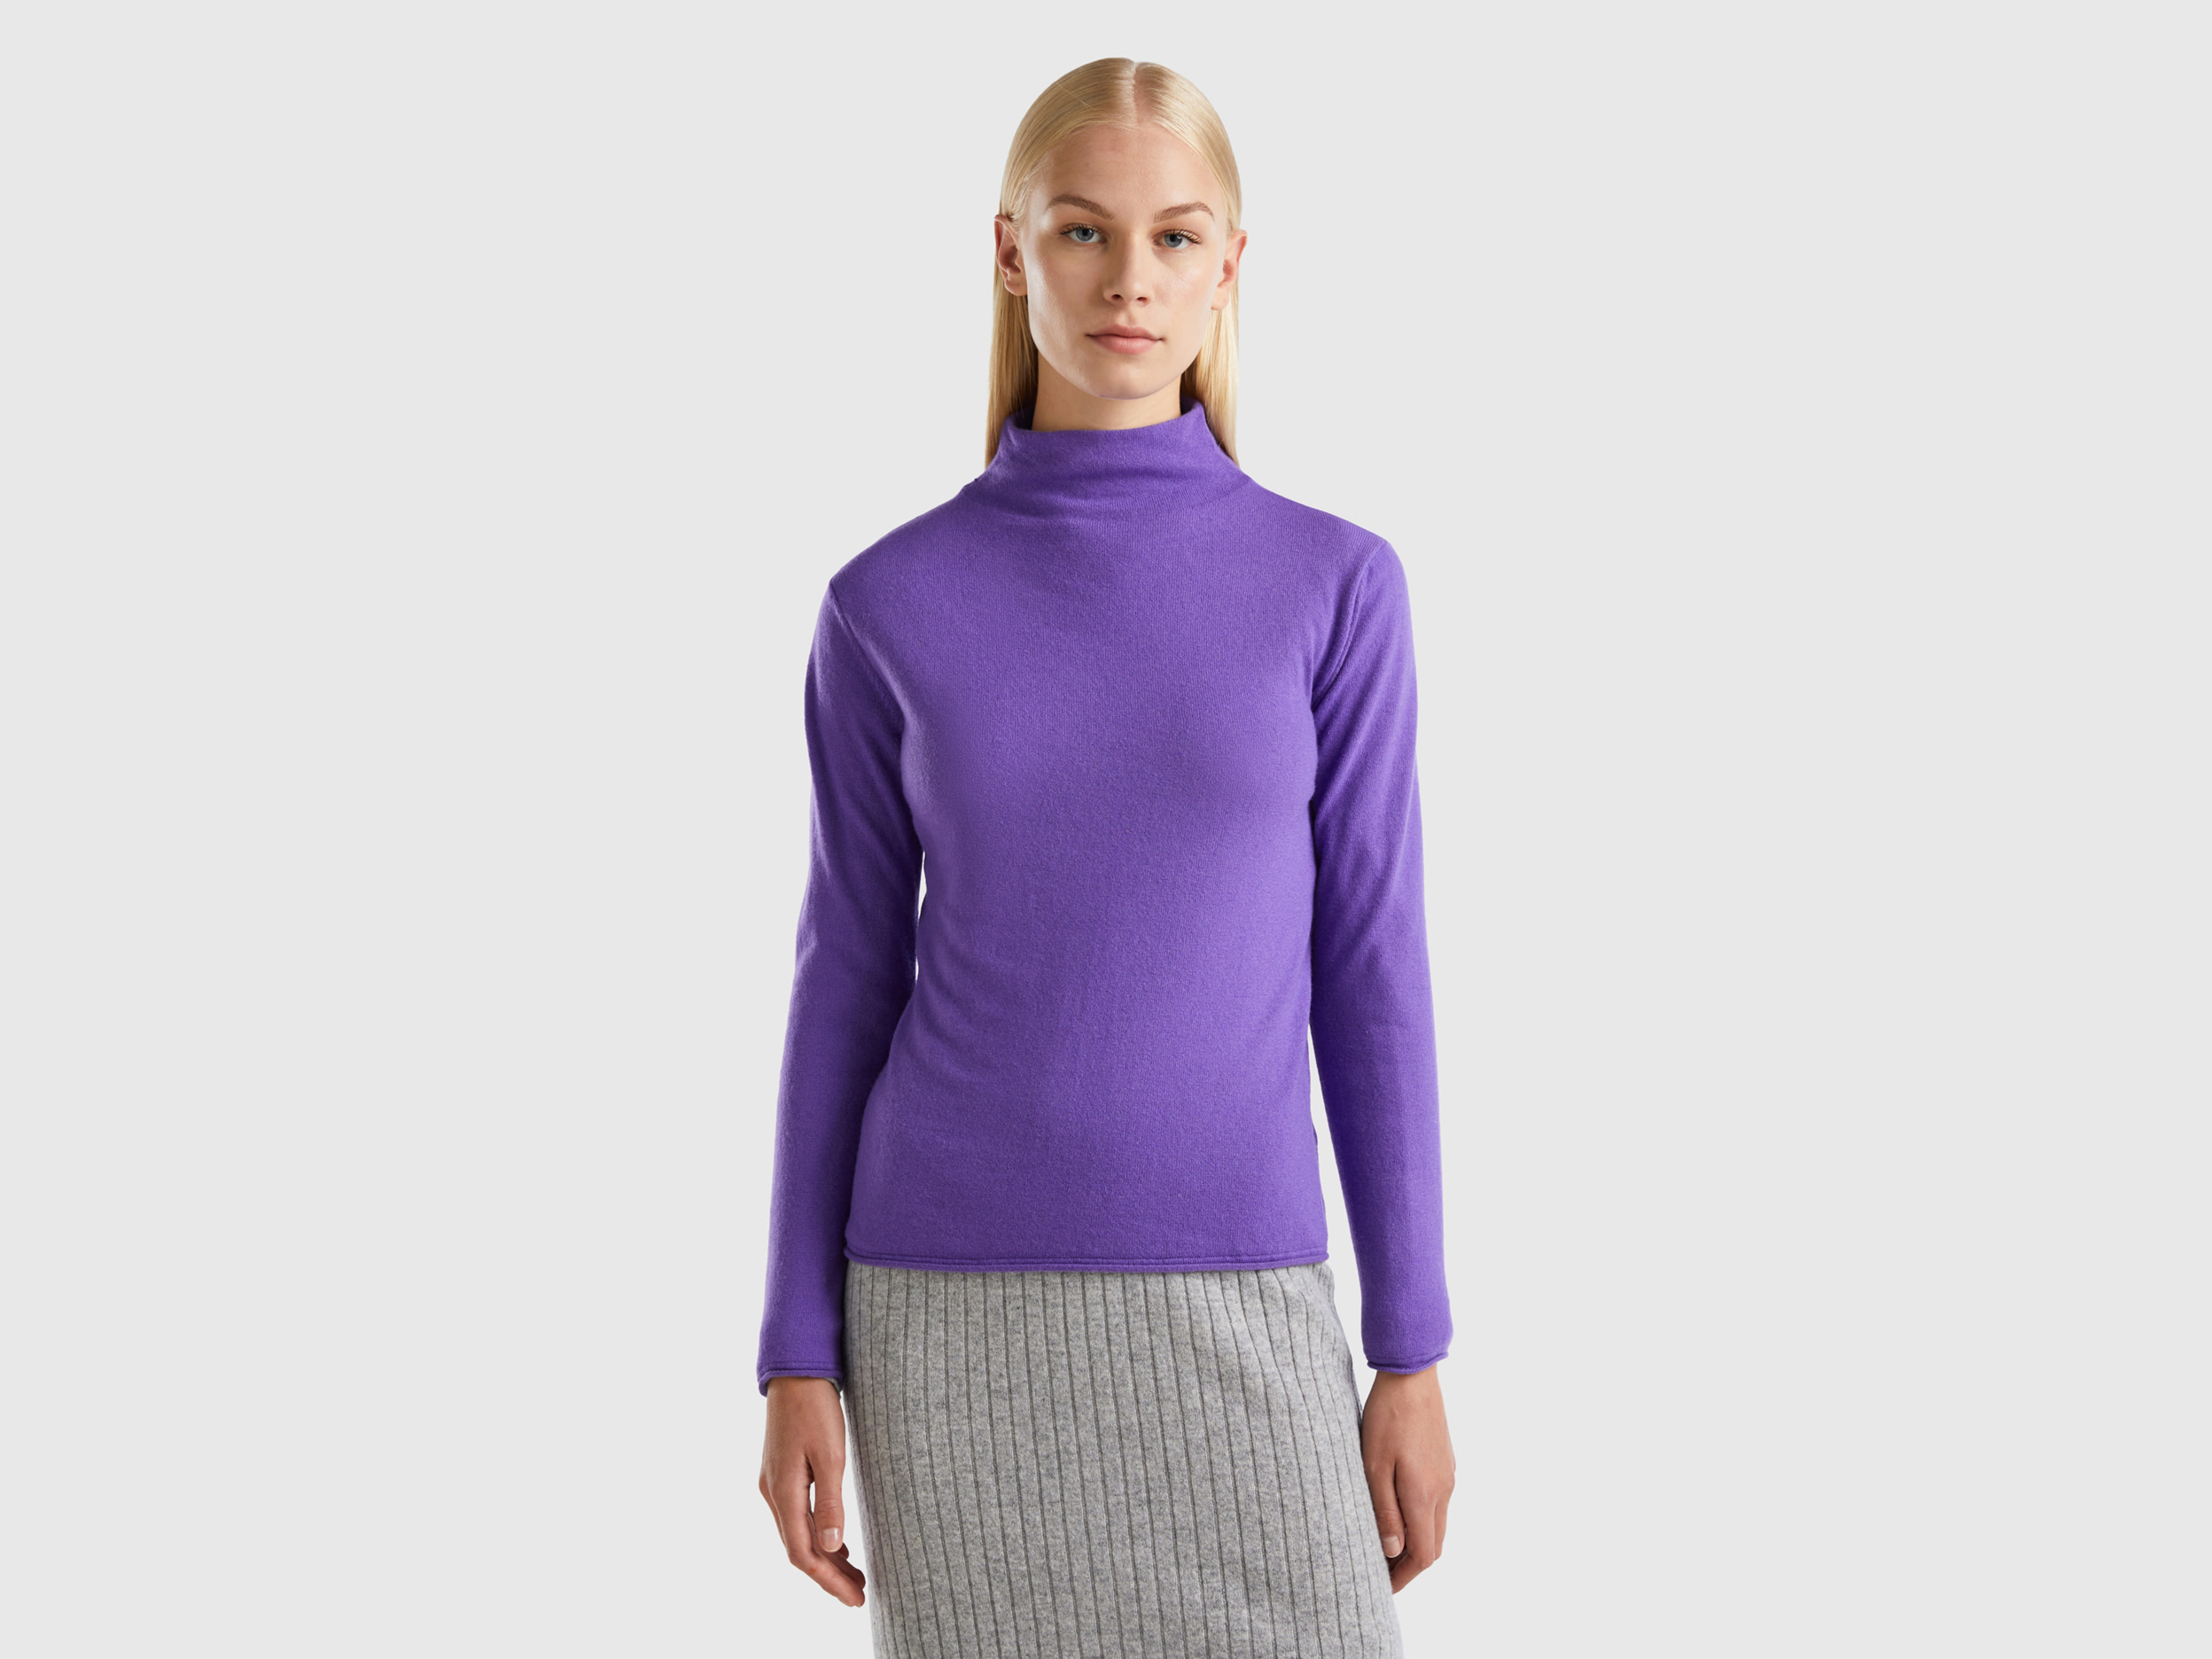 Benetton, Cashmere Blend Sweater, size L, Violet, Women